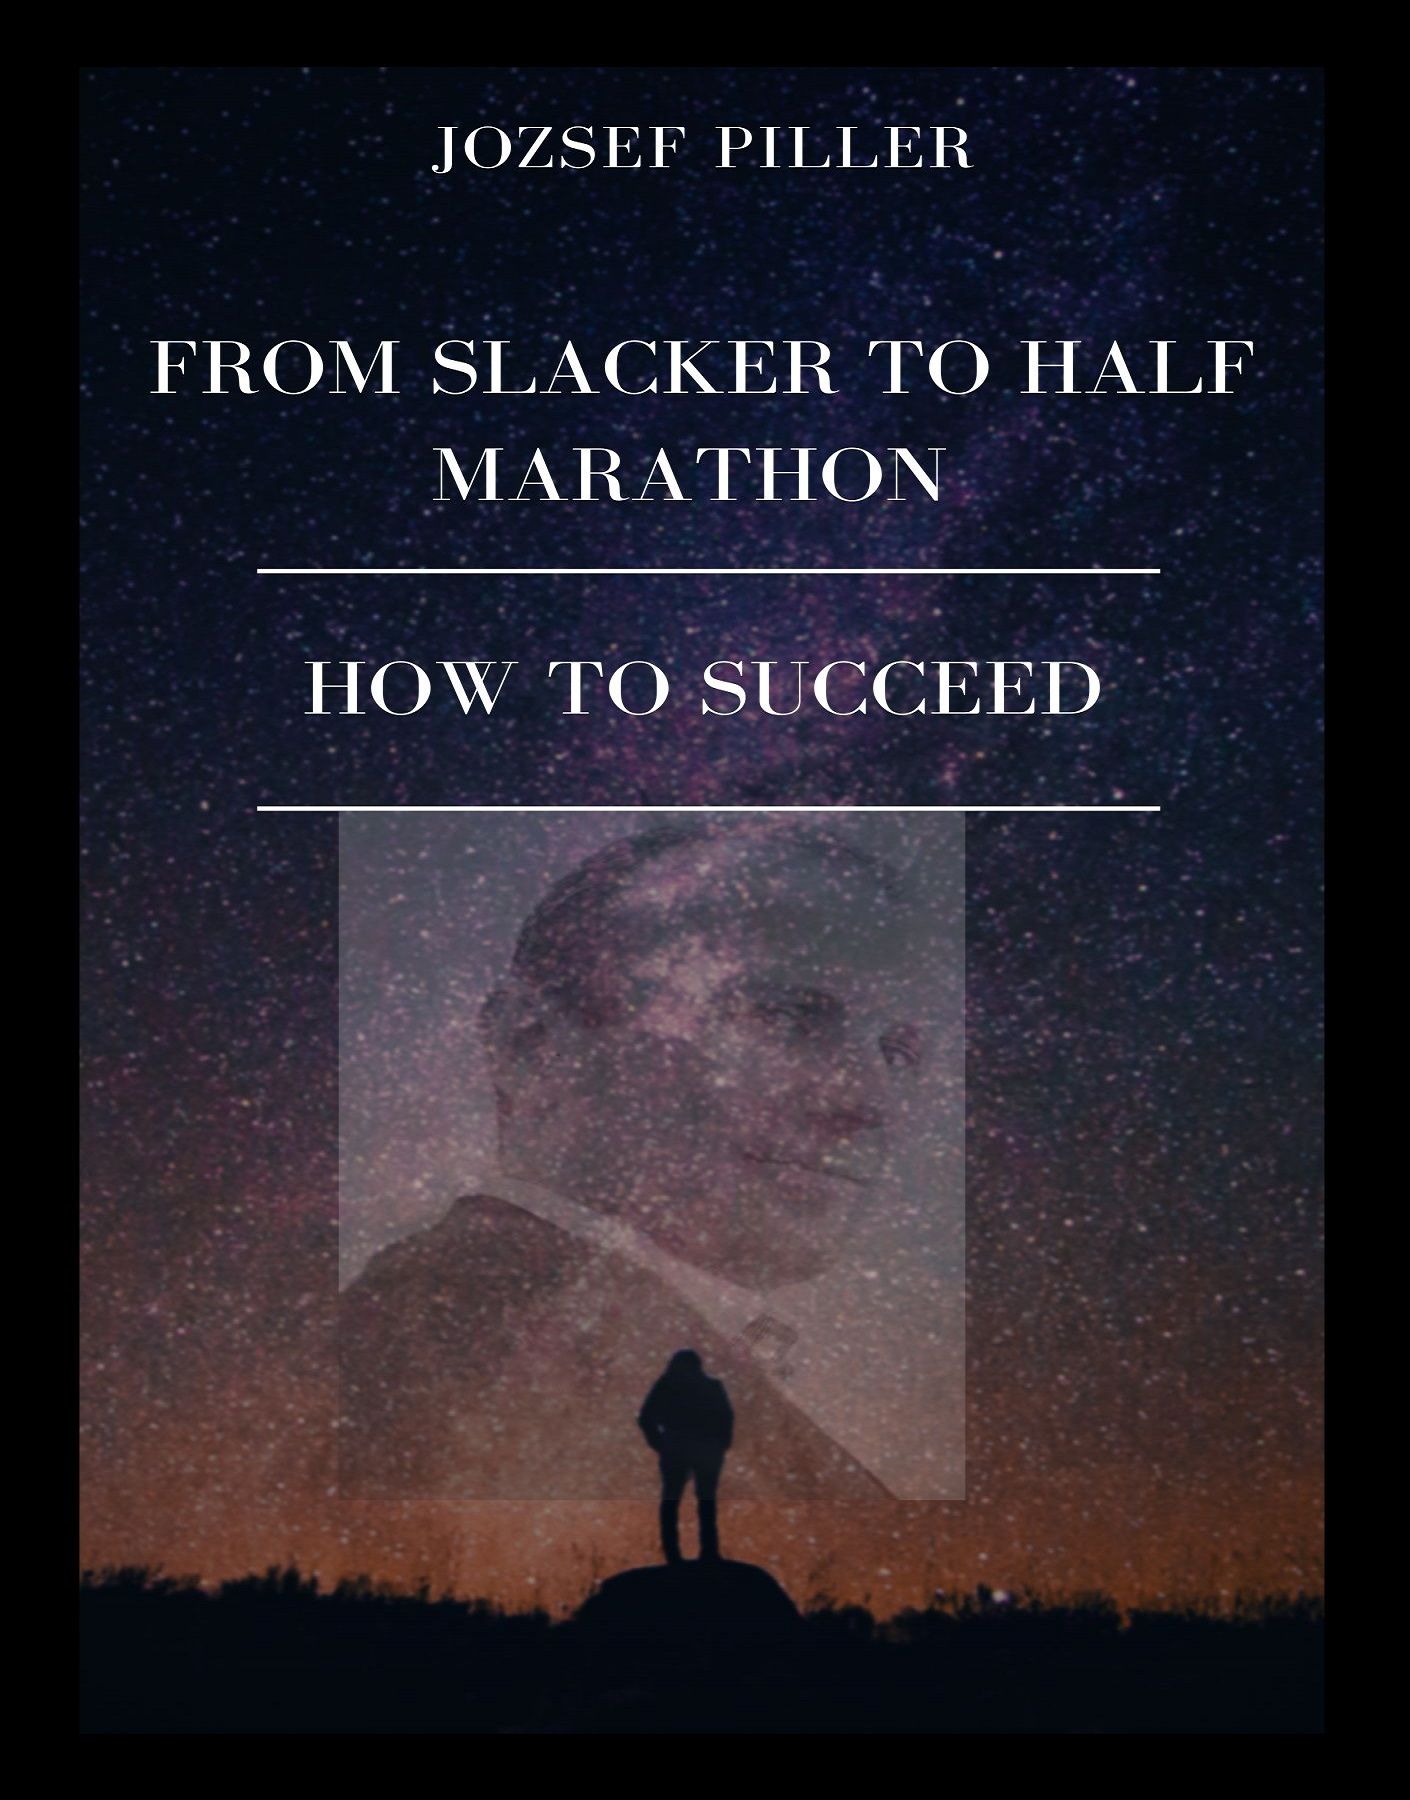 From Slacker to Half Marathon – How to Succeed, ljudbok av Jozsef Piller